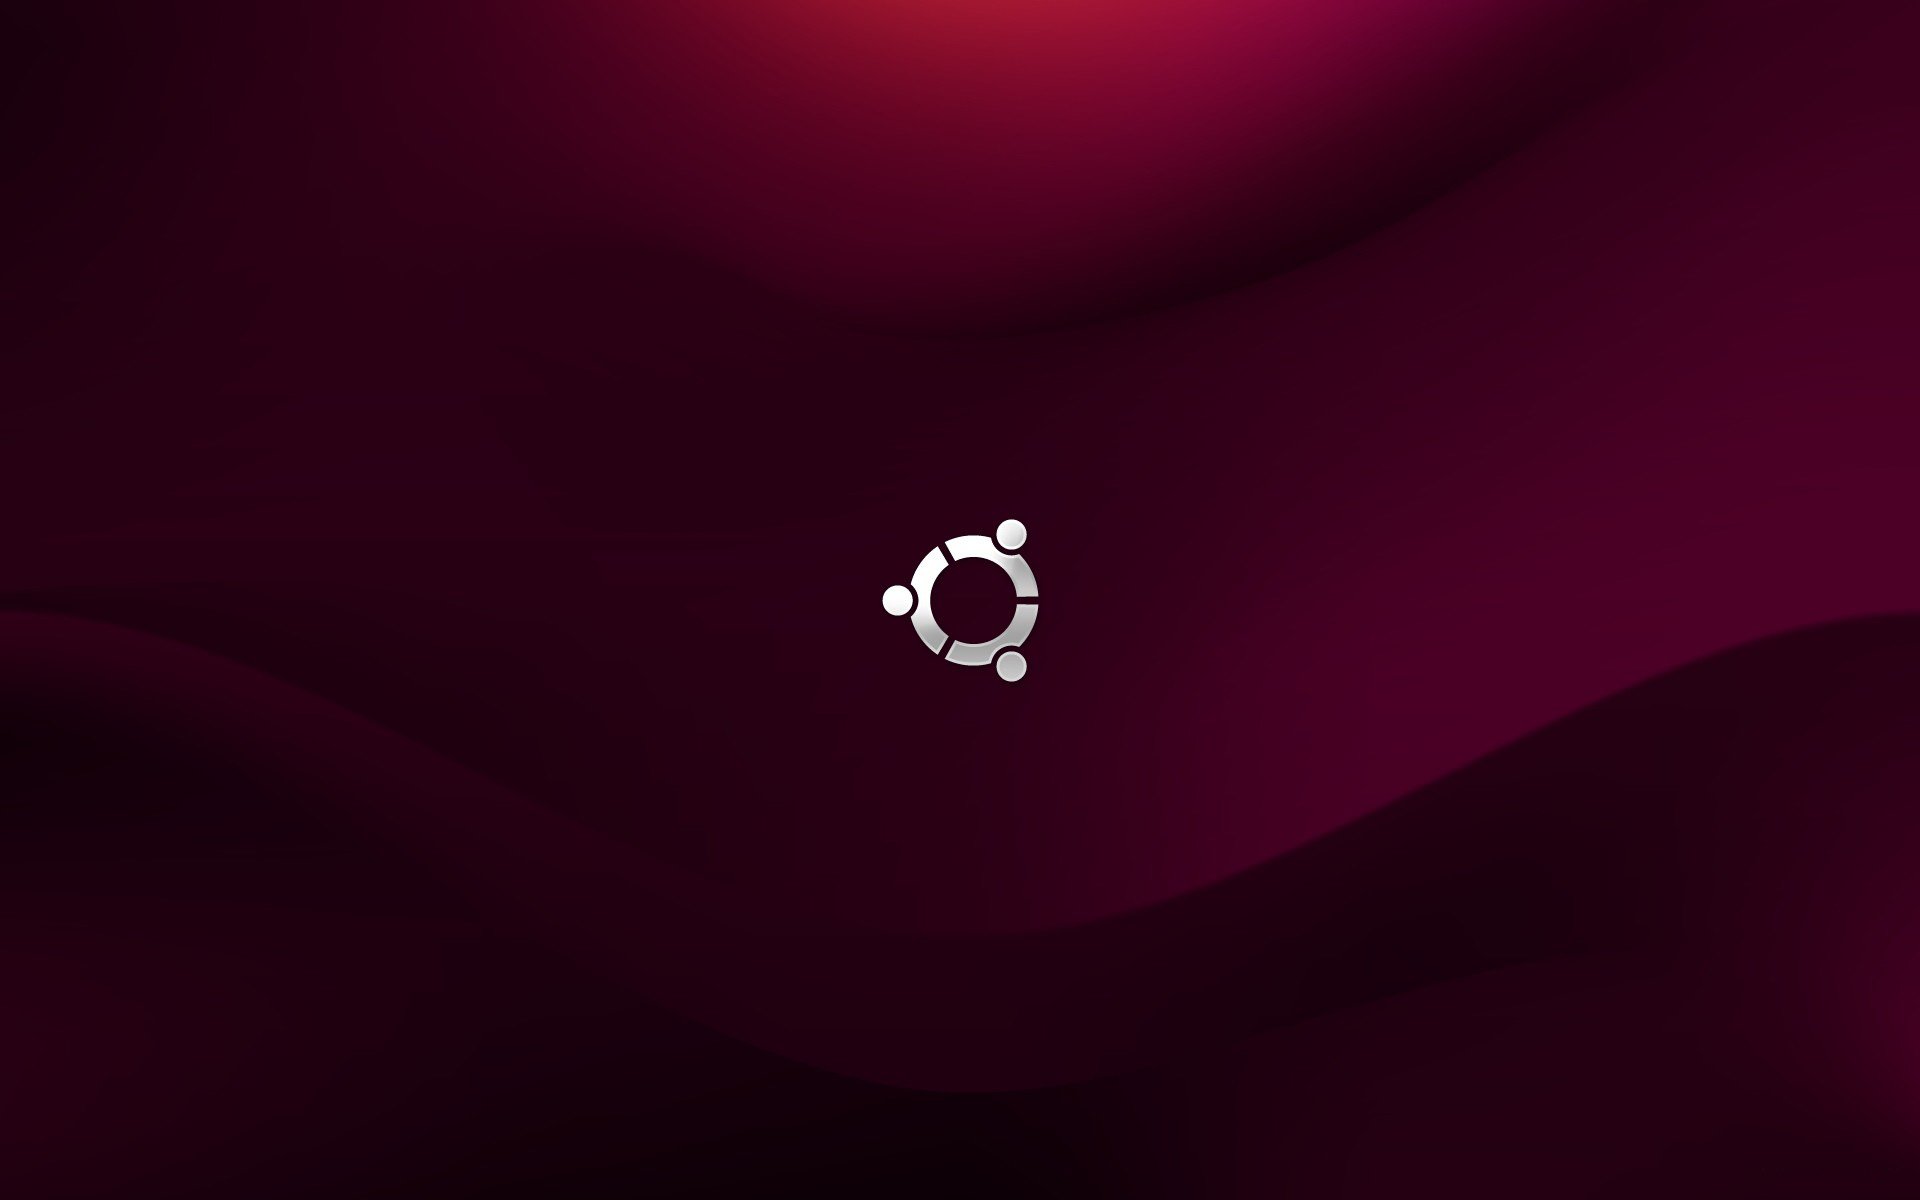 download ubuntu